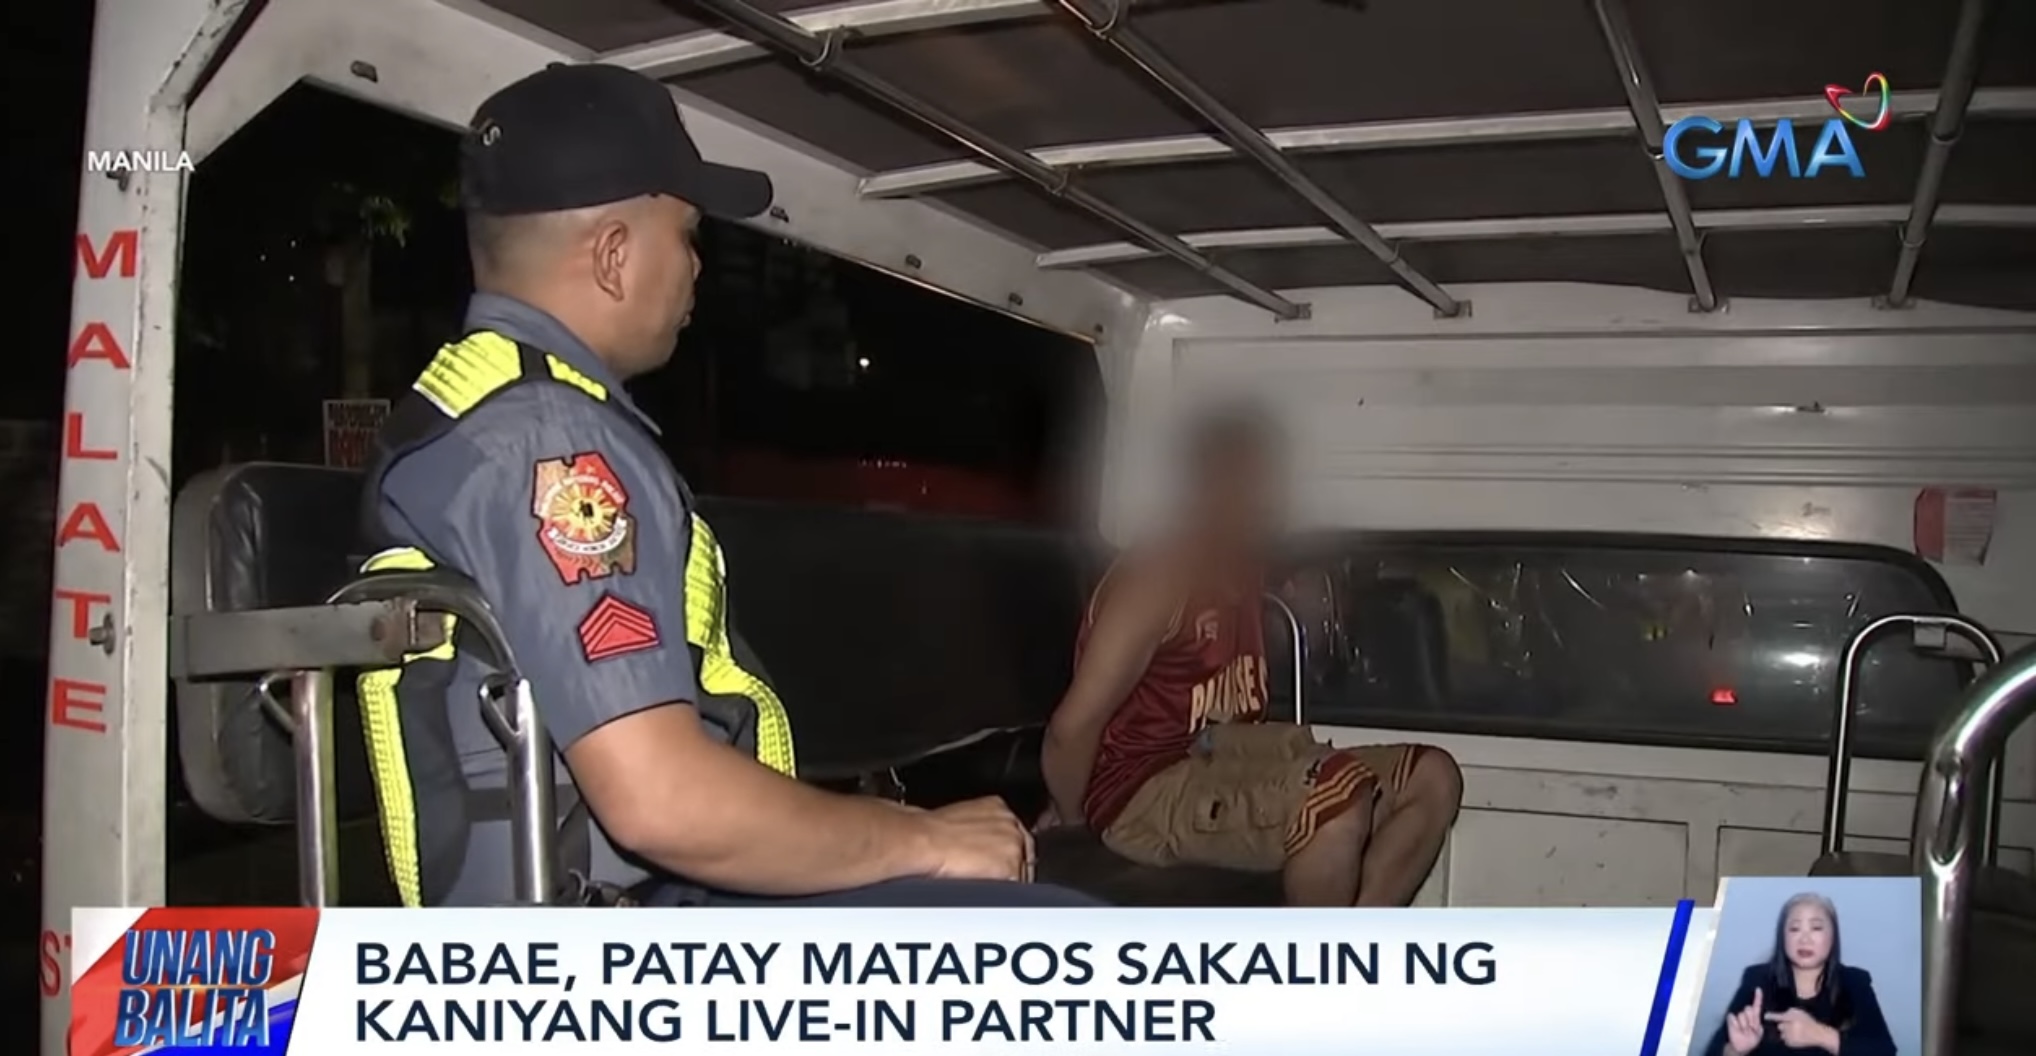 Babae, patay sa pananakal ng live-in partner sa Maynila thumbnail